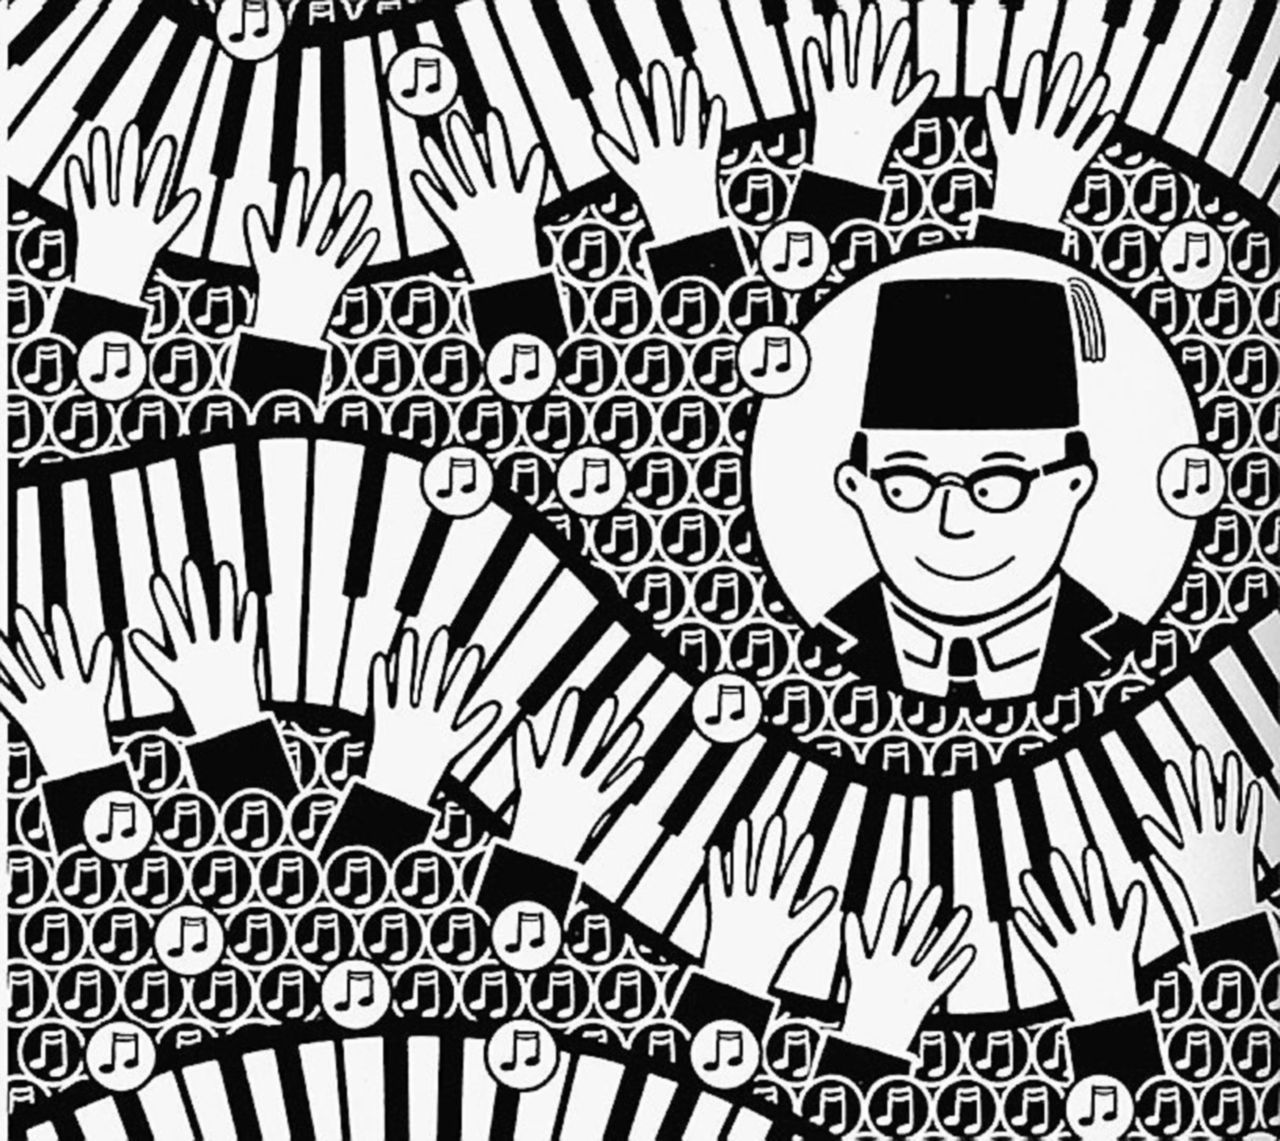 Copertina di Melodie orientali sulla tastiera in bianco e nero di un graphic novel tra due mondi